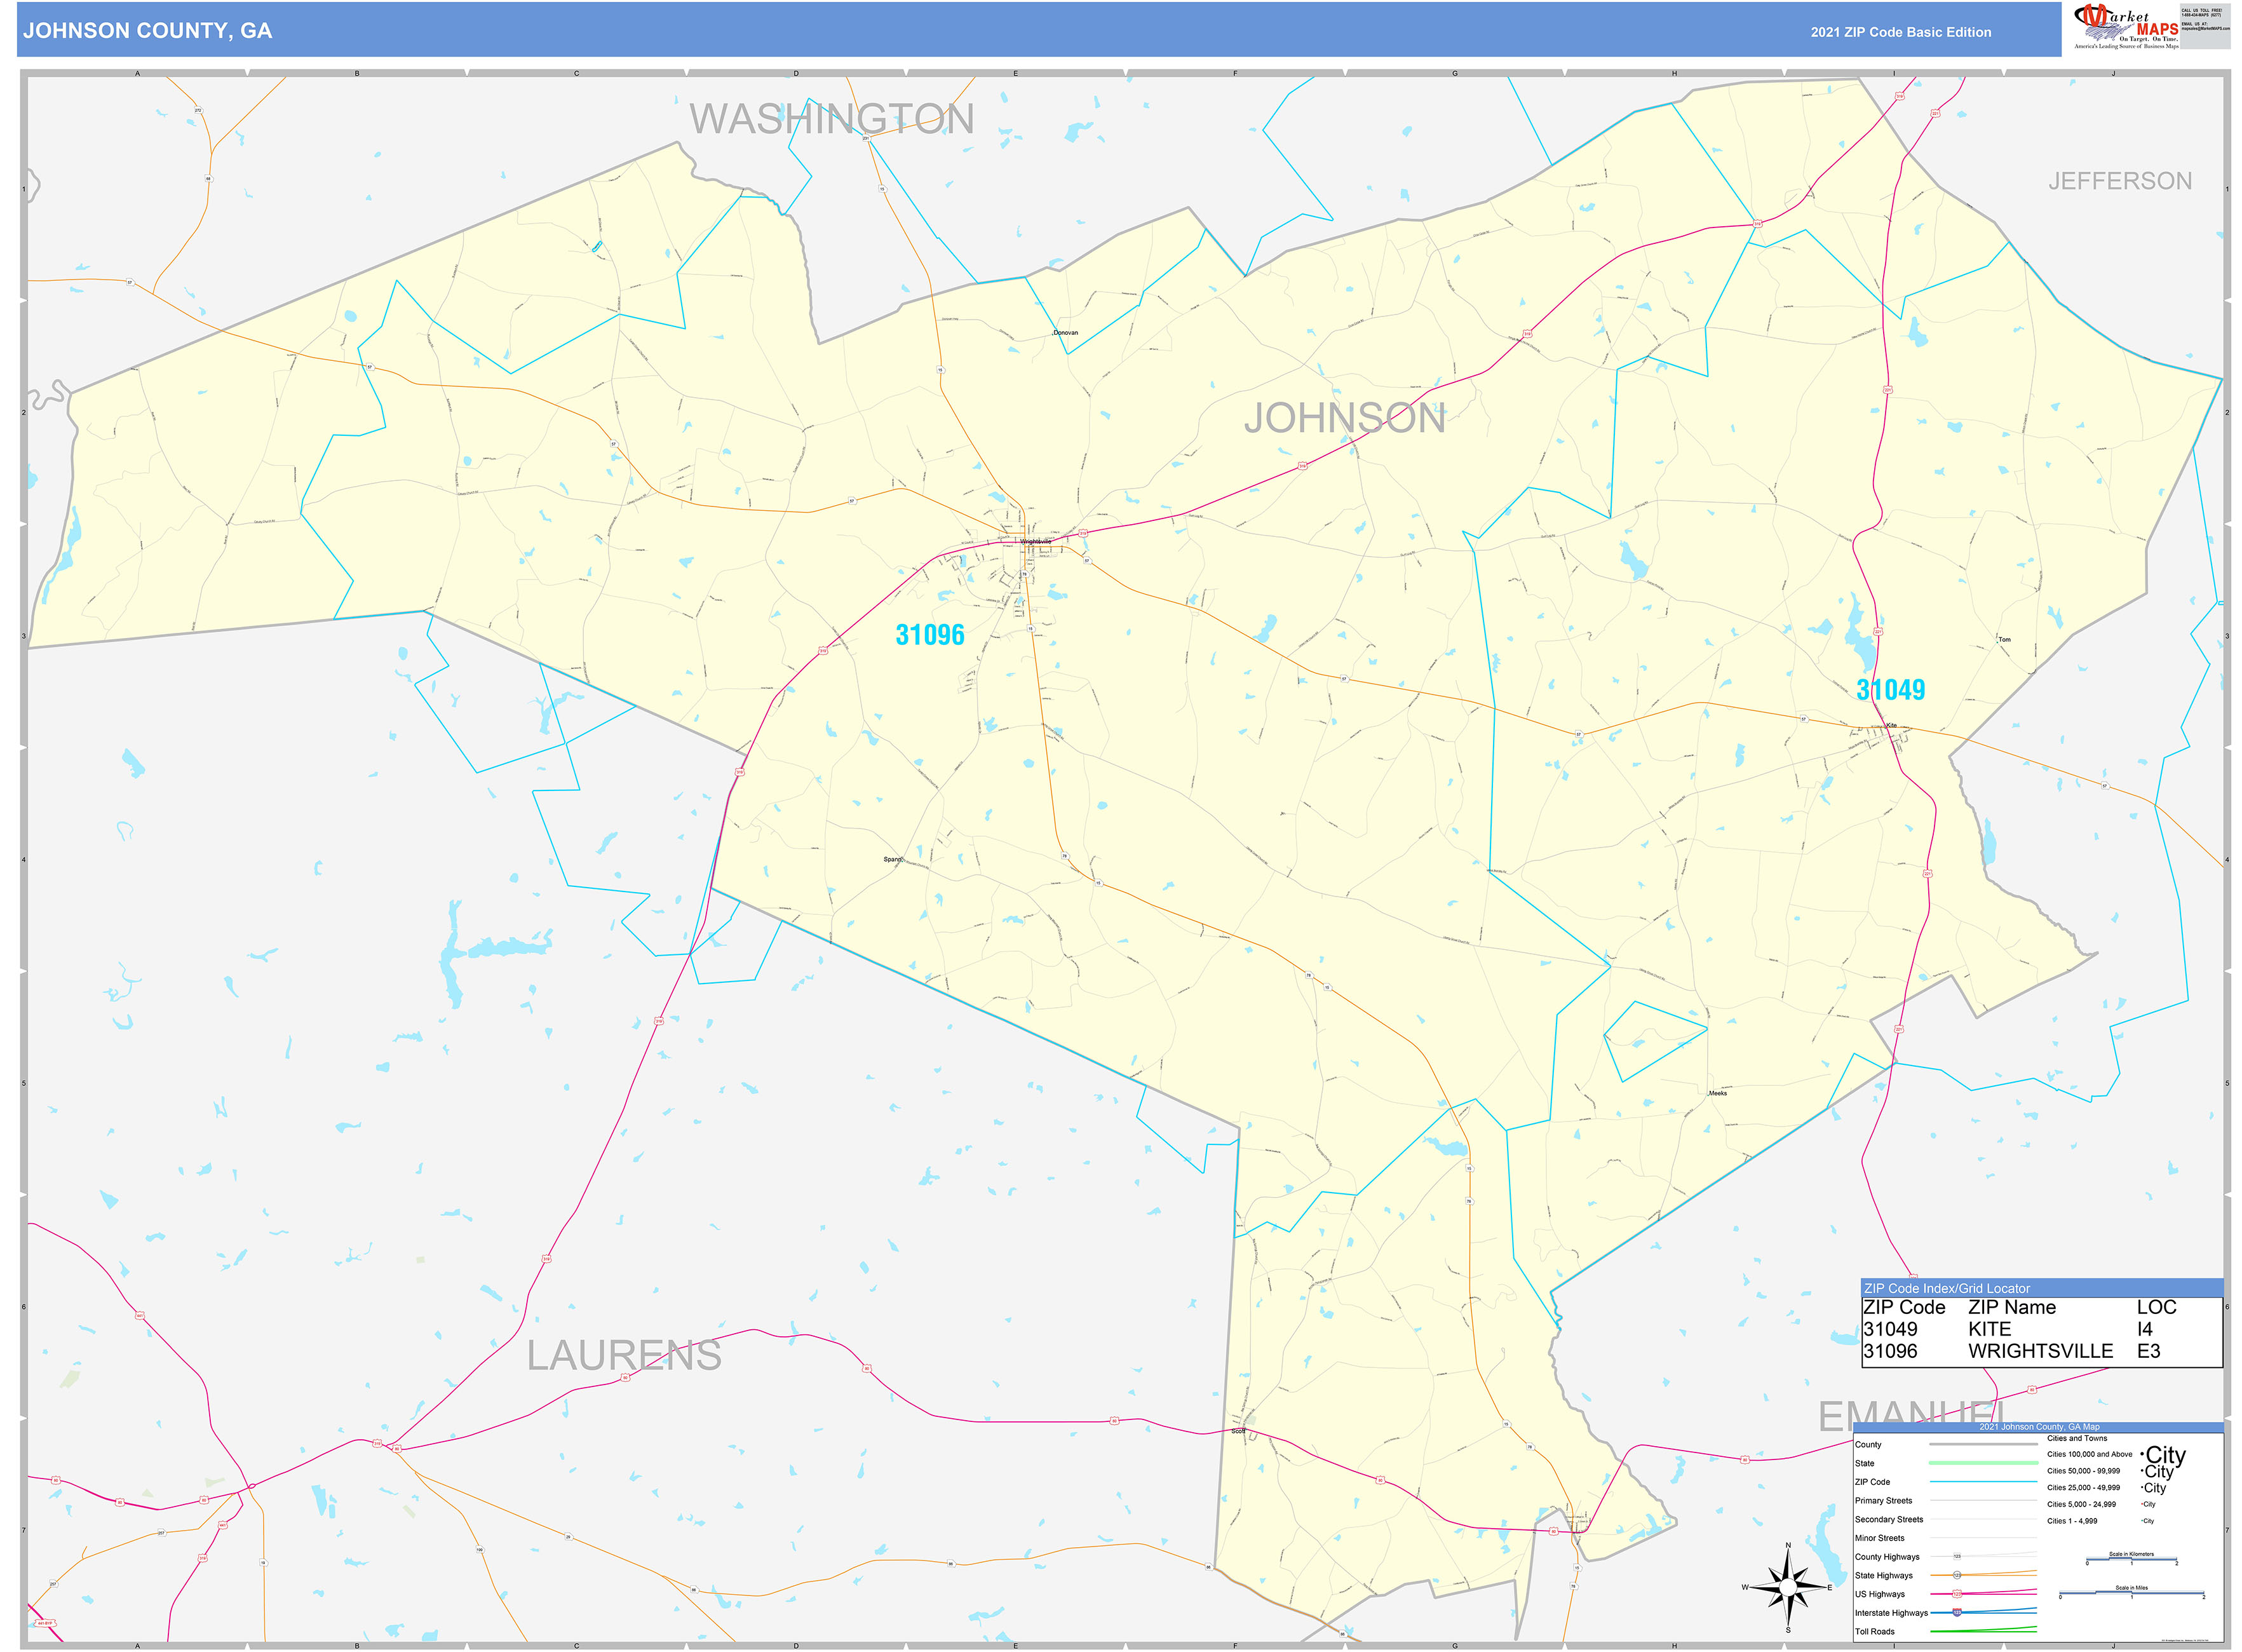 Johnson County, GA Zip Code Wall Map Basic Style by MarketMAPS - MapSales